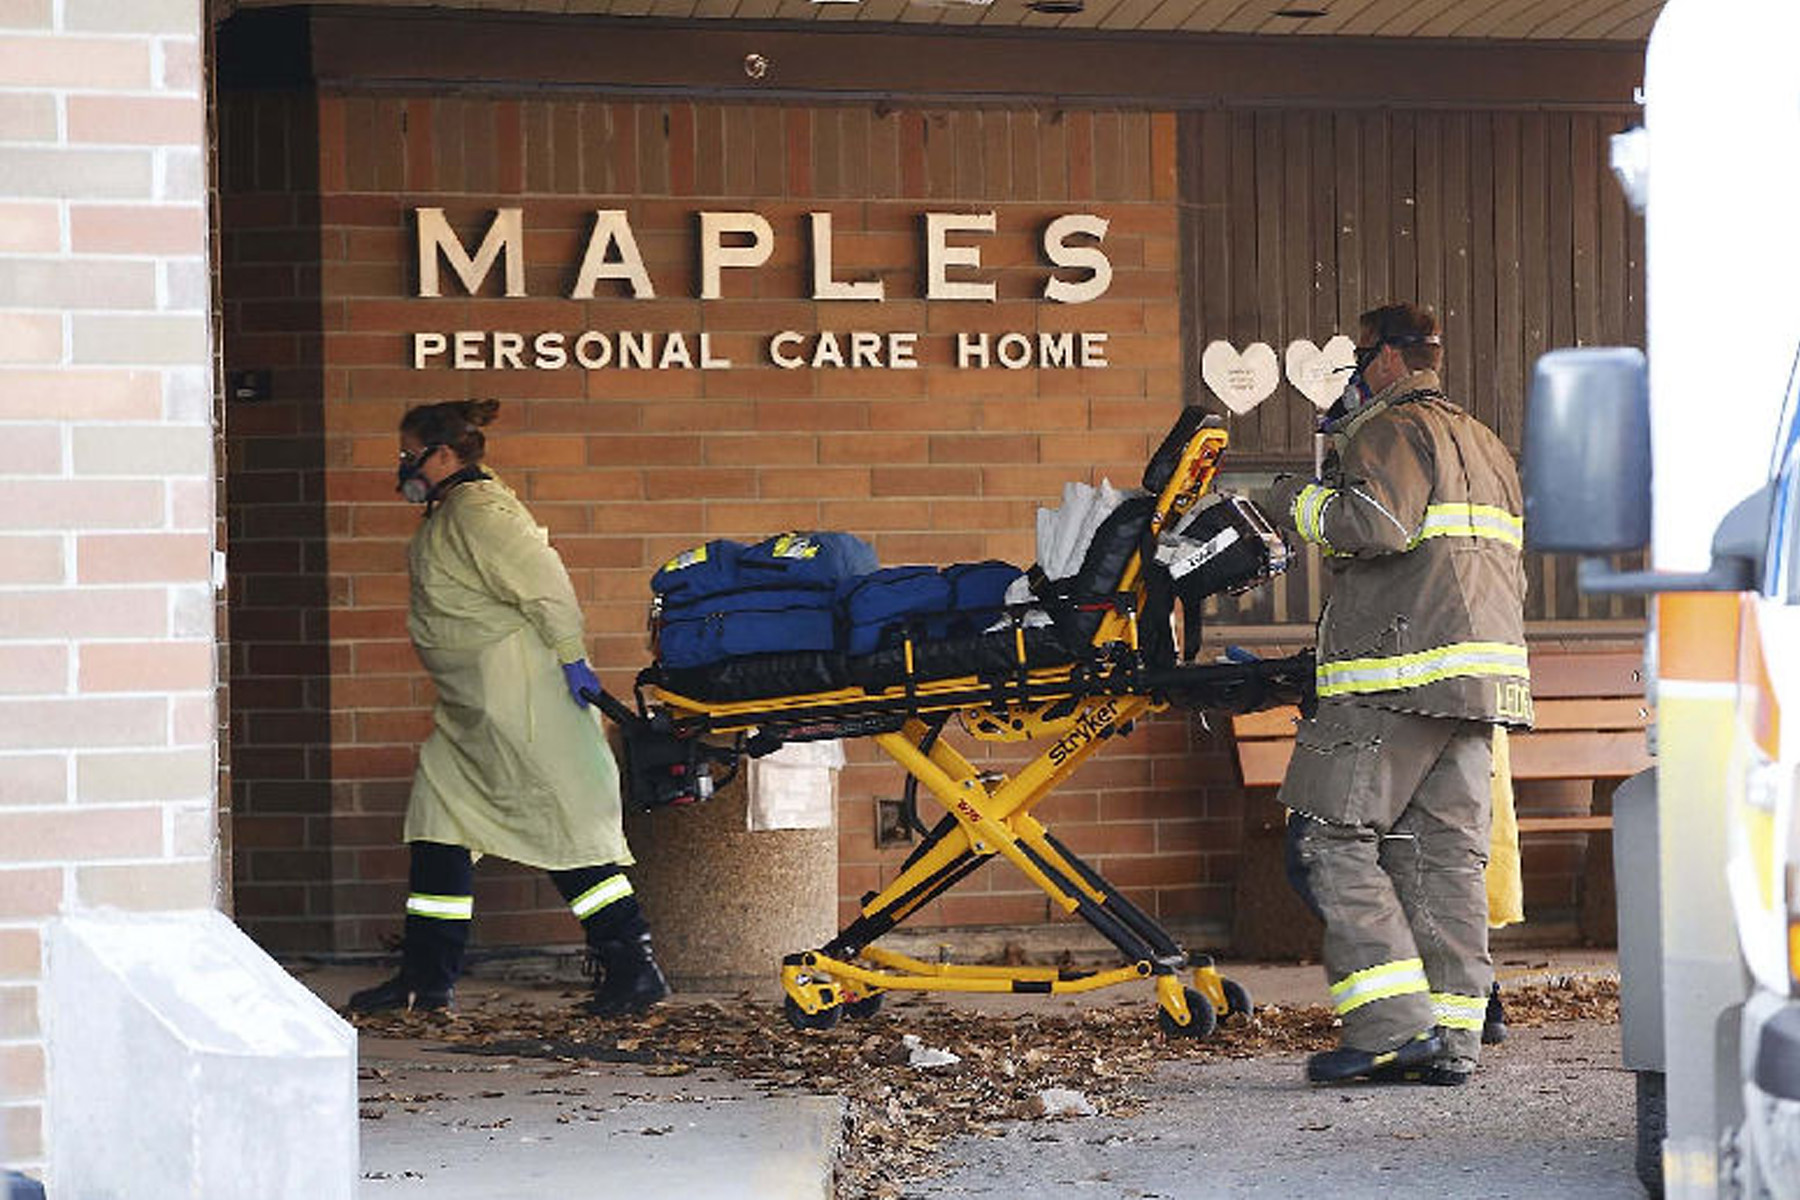 اعزام تیم پاسخ سریع به بحران کرونا پس از 8 مورد مرگ و میر به مرکز مراقبت های وینیپگ